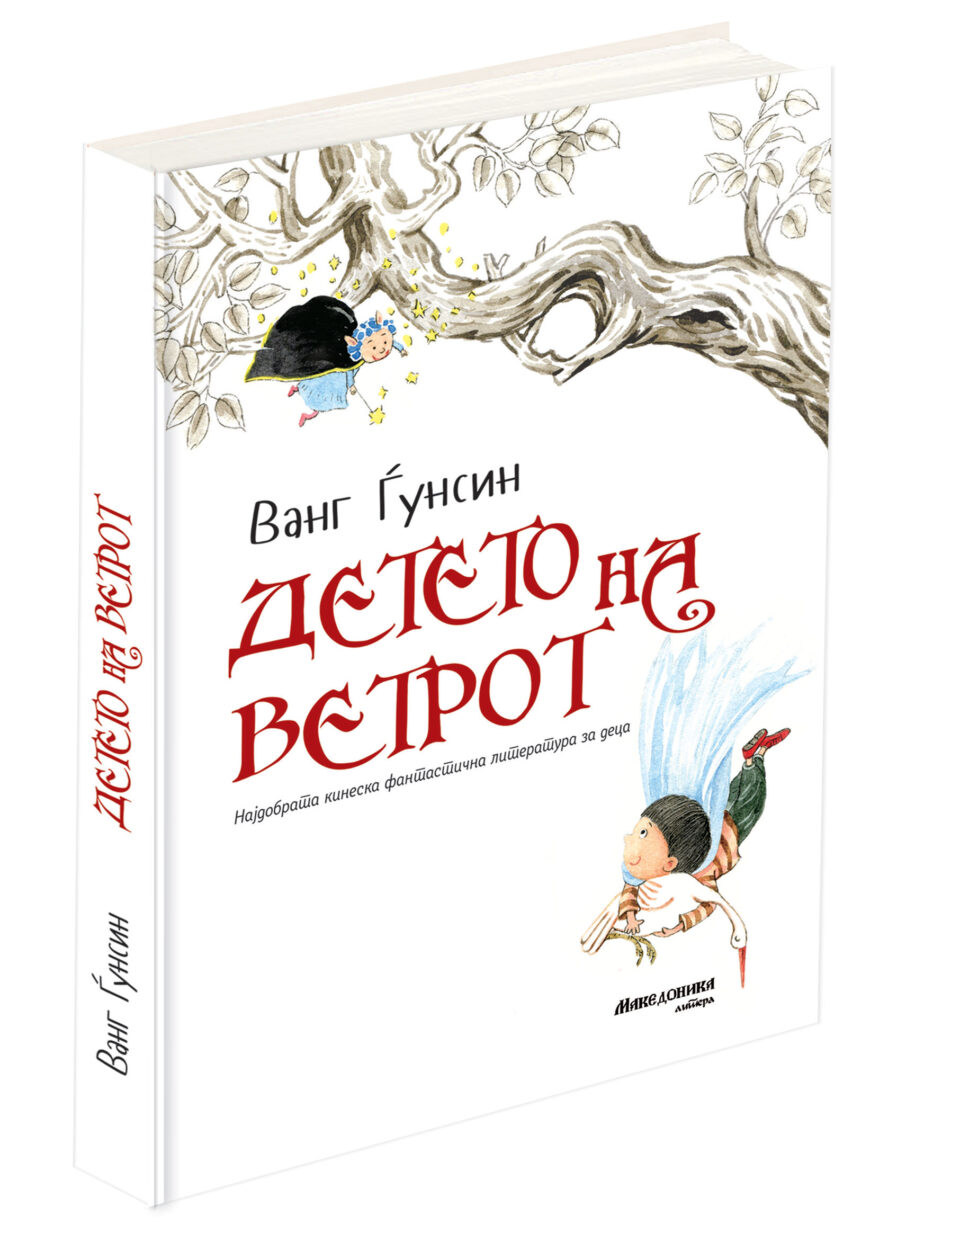 „Македоника литера“ објави два романа од серијата со наслов „Најдобрата кинеска фантастична литература за деца“